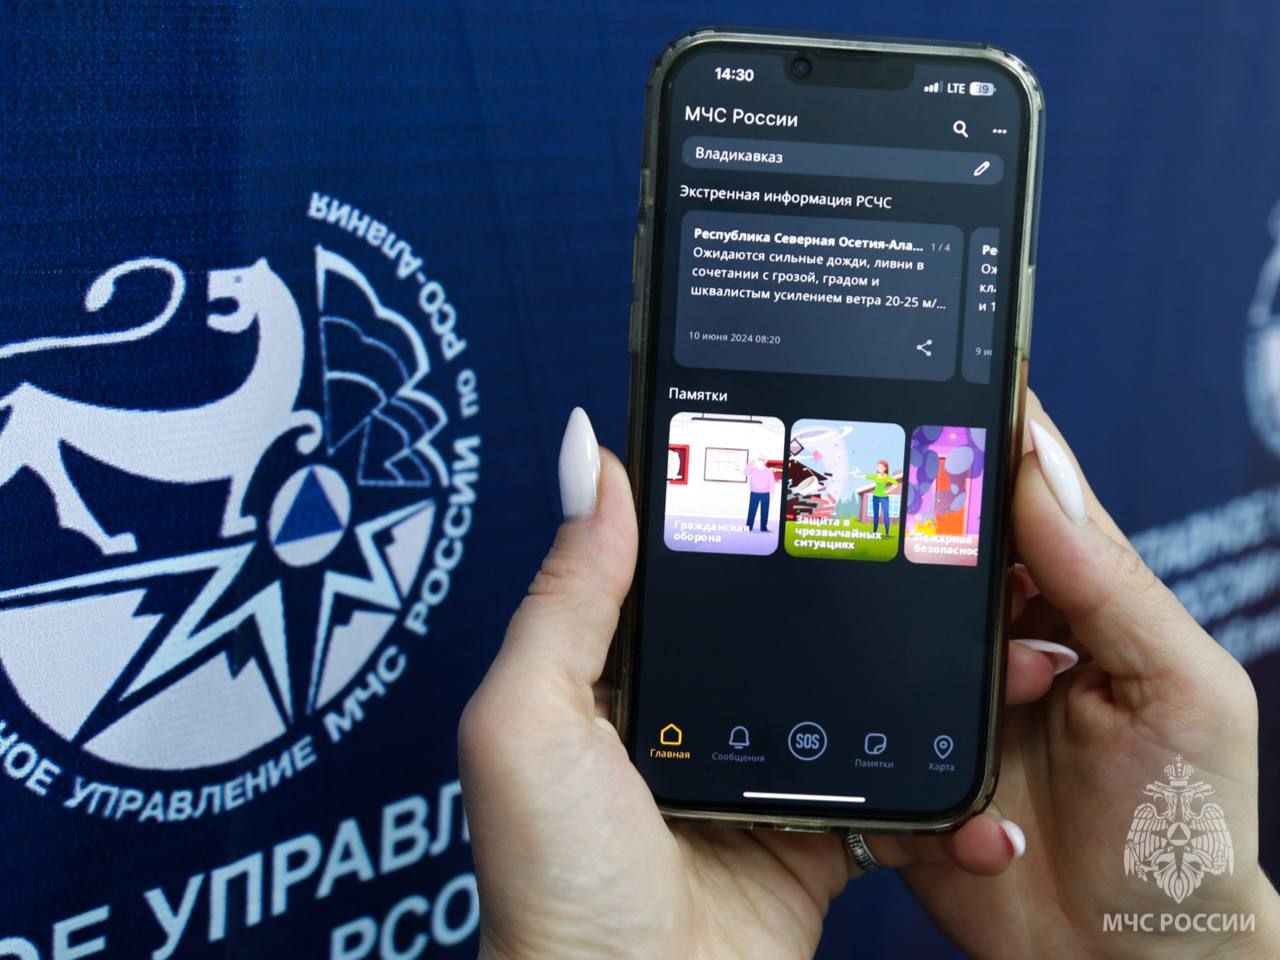 МЧС России разработано уникальное мобильное приложение, которое поможет сориентироваться и мгновенно найти информацию о действиях при ЧС